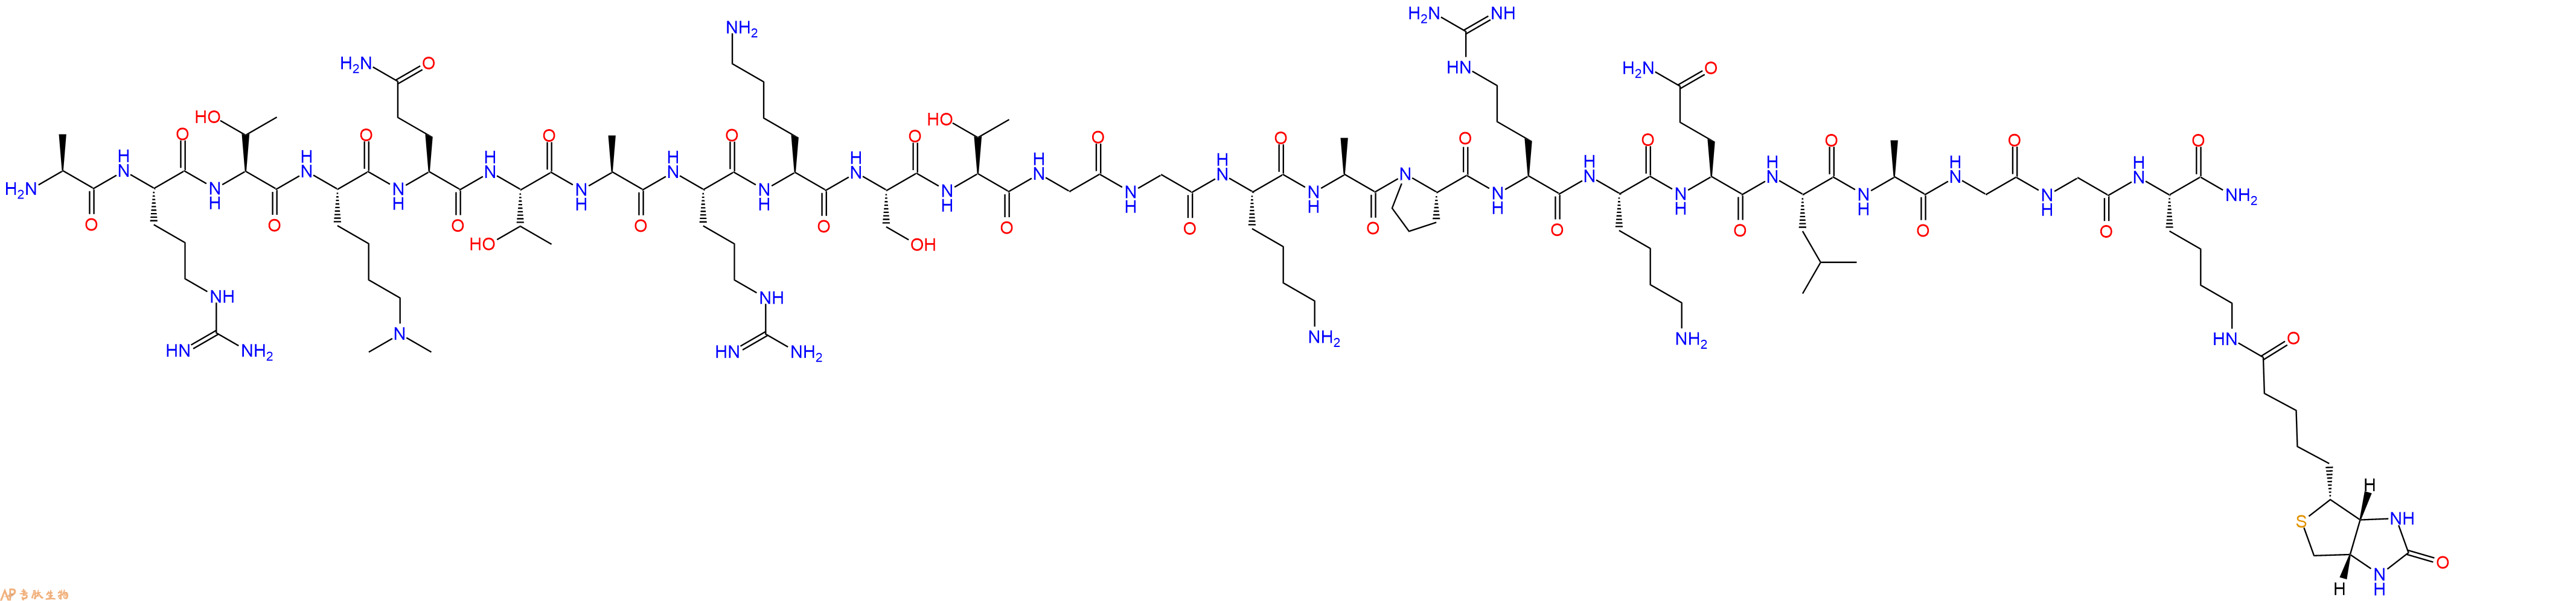 专肽生物产品组蛋白肽段(Lys(Me)₃⁴)-Histone H3 (1-21)-Gly-Gly-Lys(bio2022956-71-2